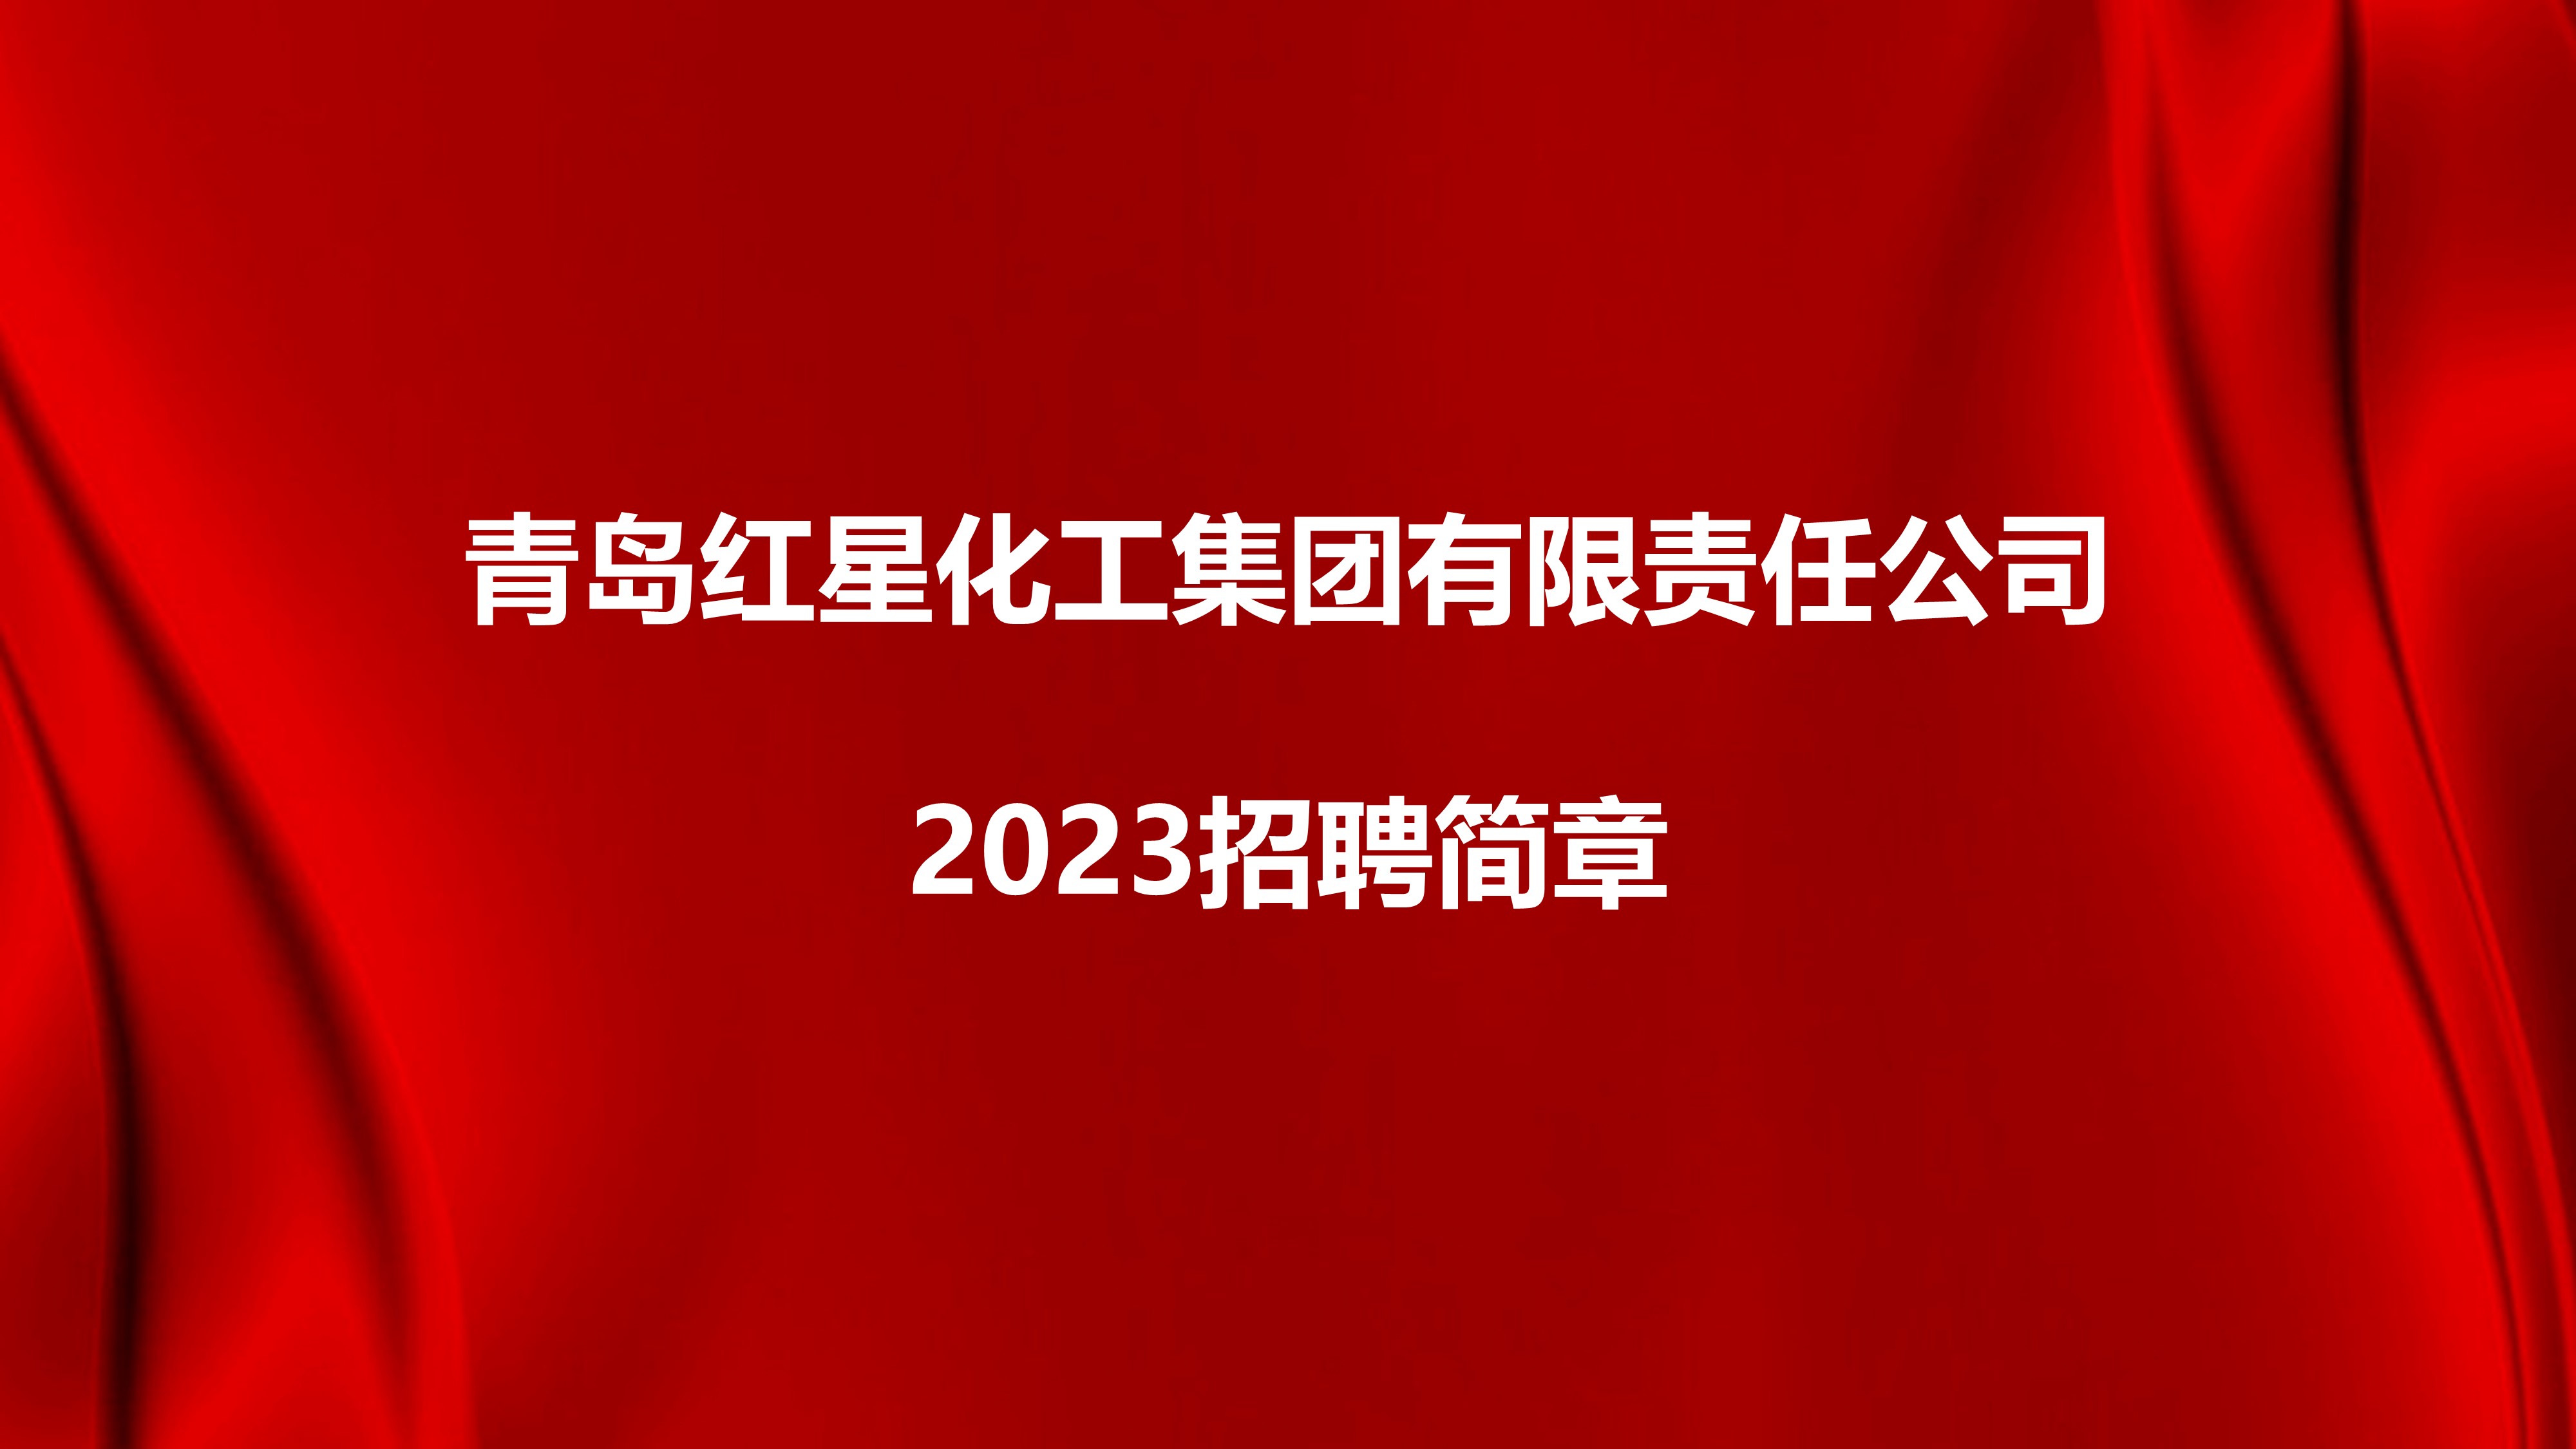 青島紅星化工集團有限責任公司2023招聘簡章